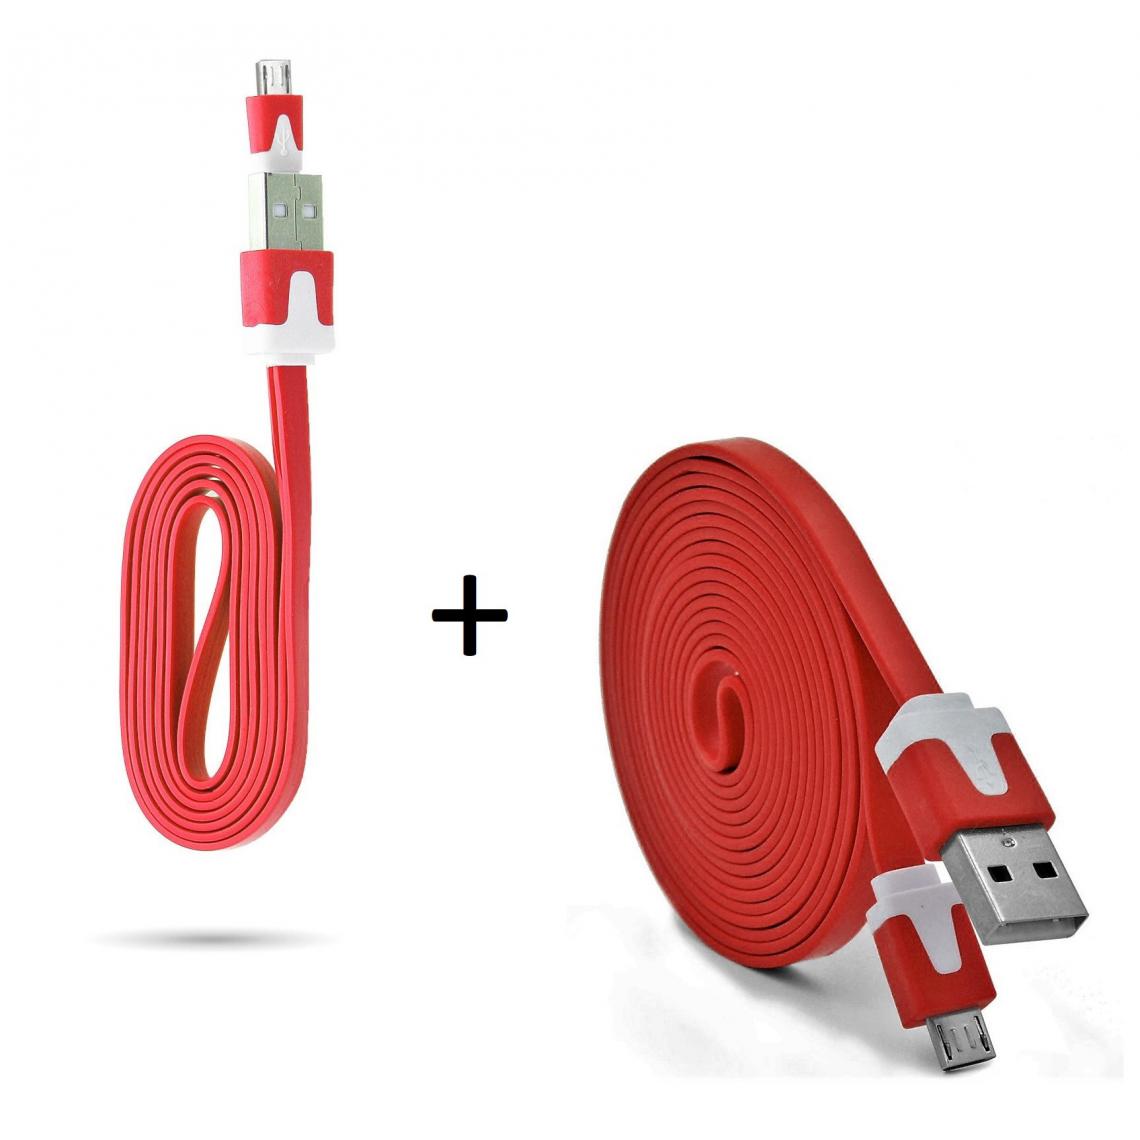 Shot - Pack Chargeur pour XIAOMI Redmi 7A Smartphone Micro USB (Cable Noodle 3m + Cable Noodle 1m) Android (ROUGE) - Chargeur secteur téléphone